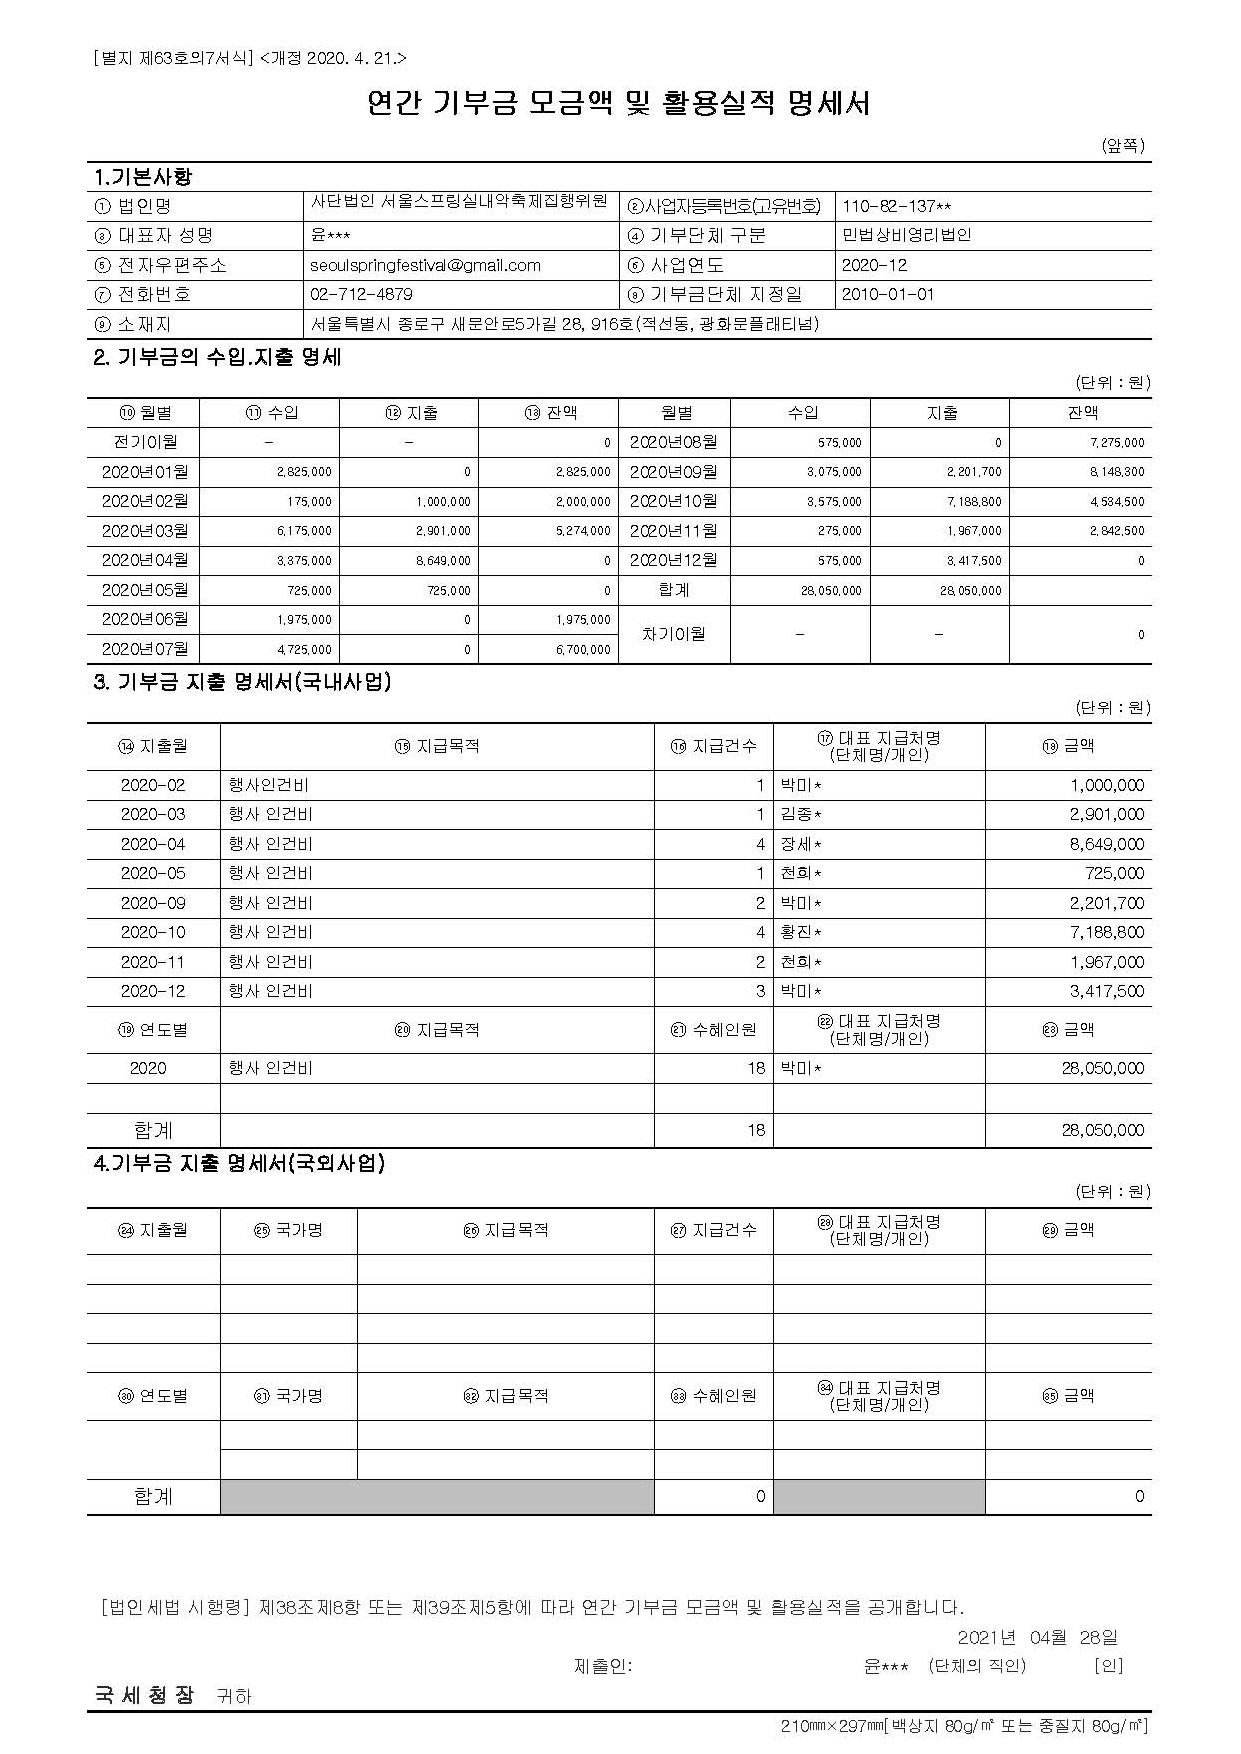 서울스프링실내악축제_2020년 연간 기부금 모금액및 활용실적명세